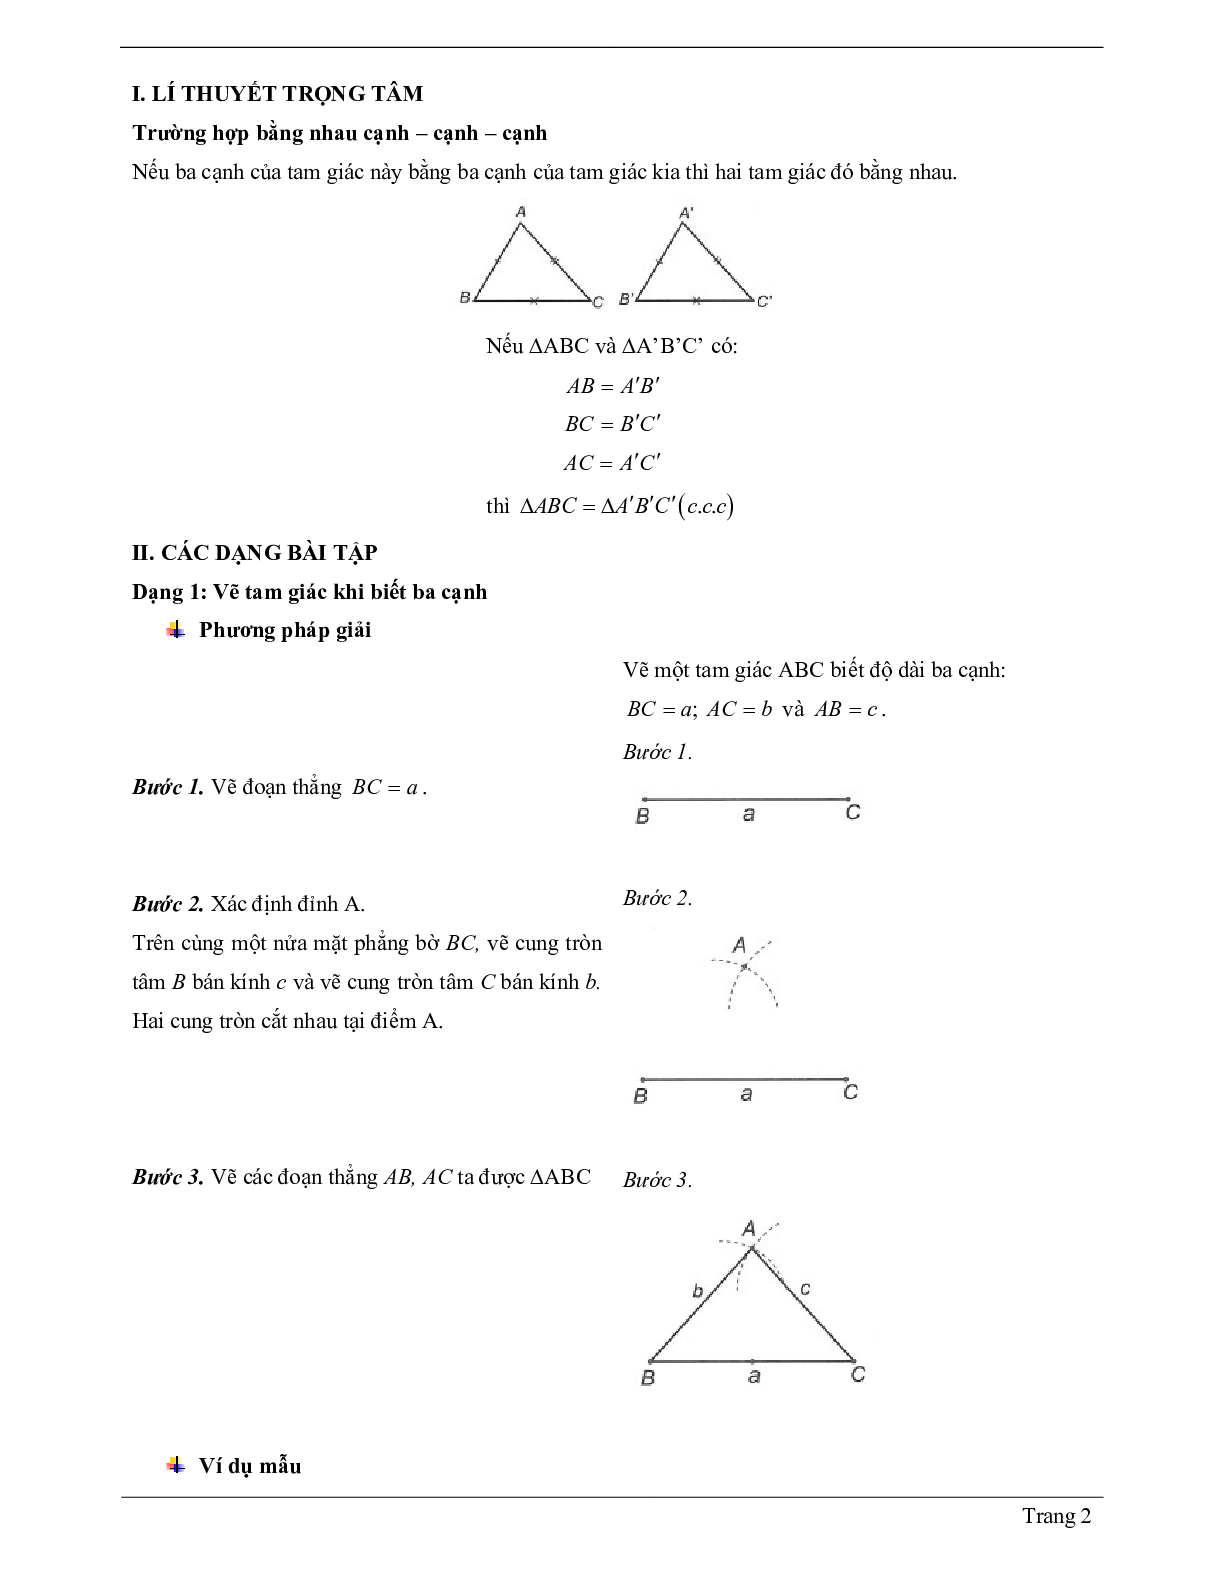 Lý thuyết Toán 7 có đáp án: Trường hợp bằng nhau thứ nhất của tam giác: cạnh - cạnh - canh (c.c.c) (trang 2)